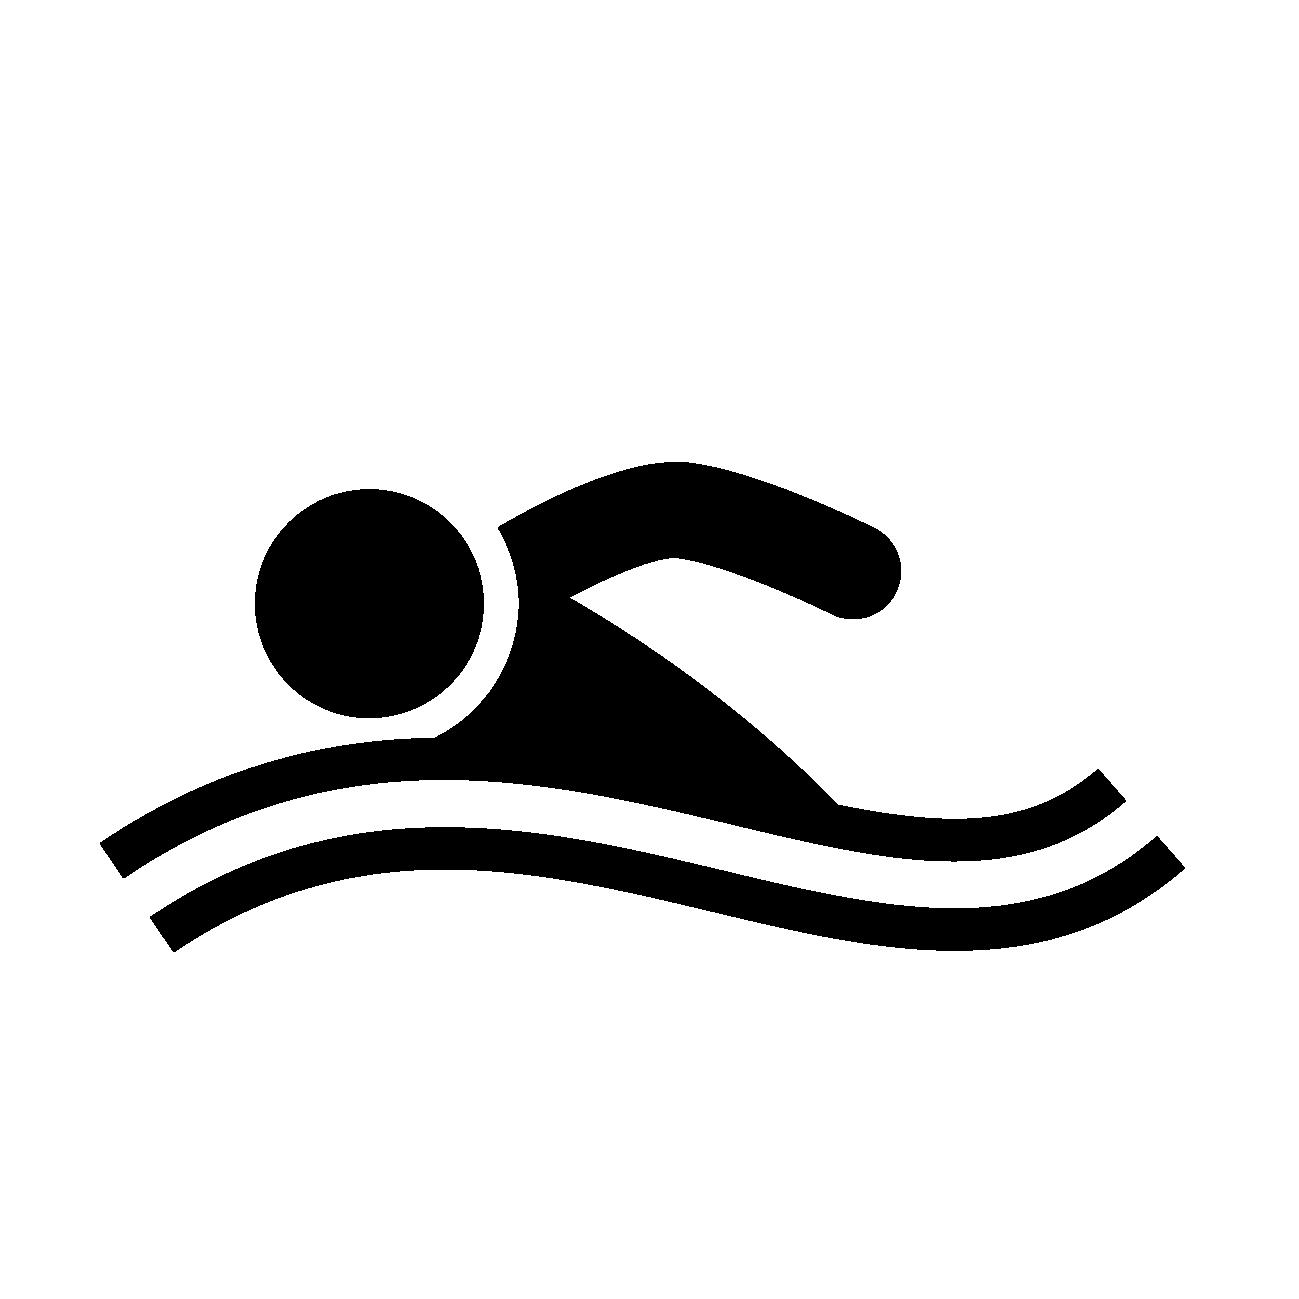 水泳部でお揃いのオリジナルタオルを作ろう おすすめしたいタオルの種類や生地は 名入れタオル製作所のスタッフブログ